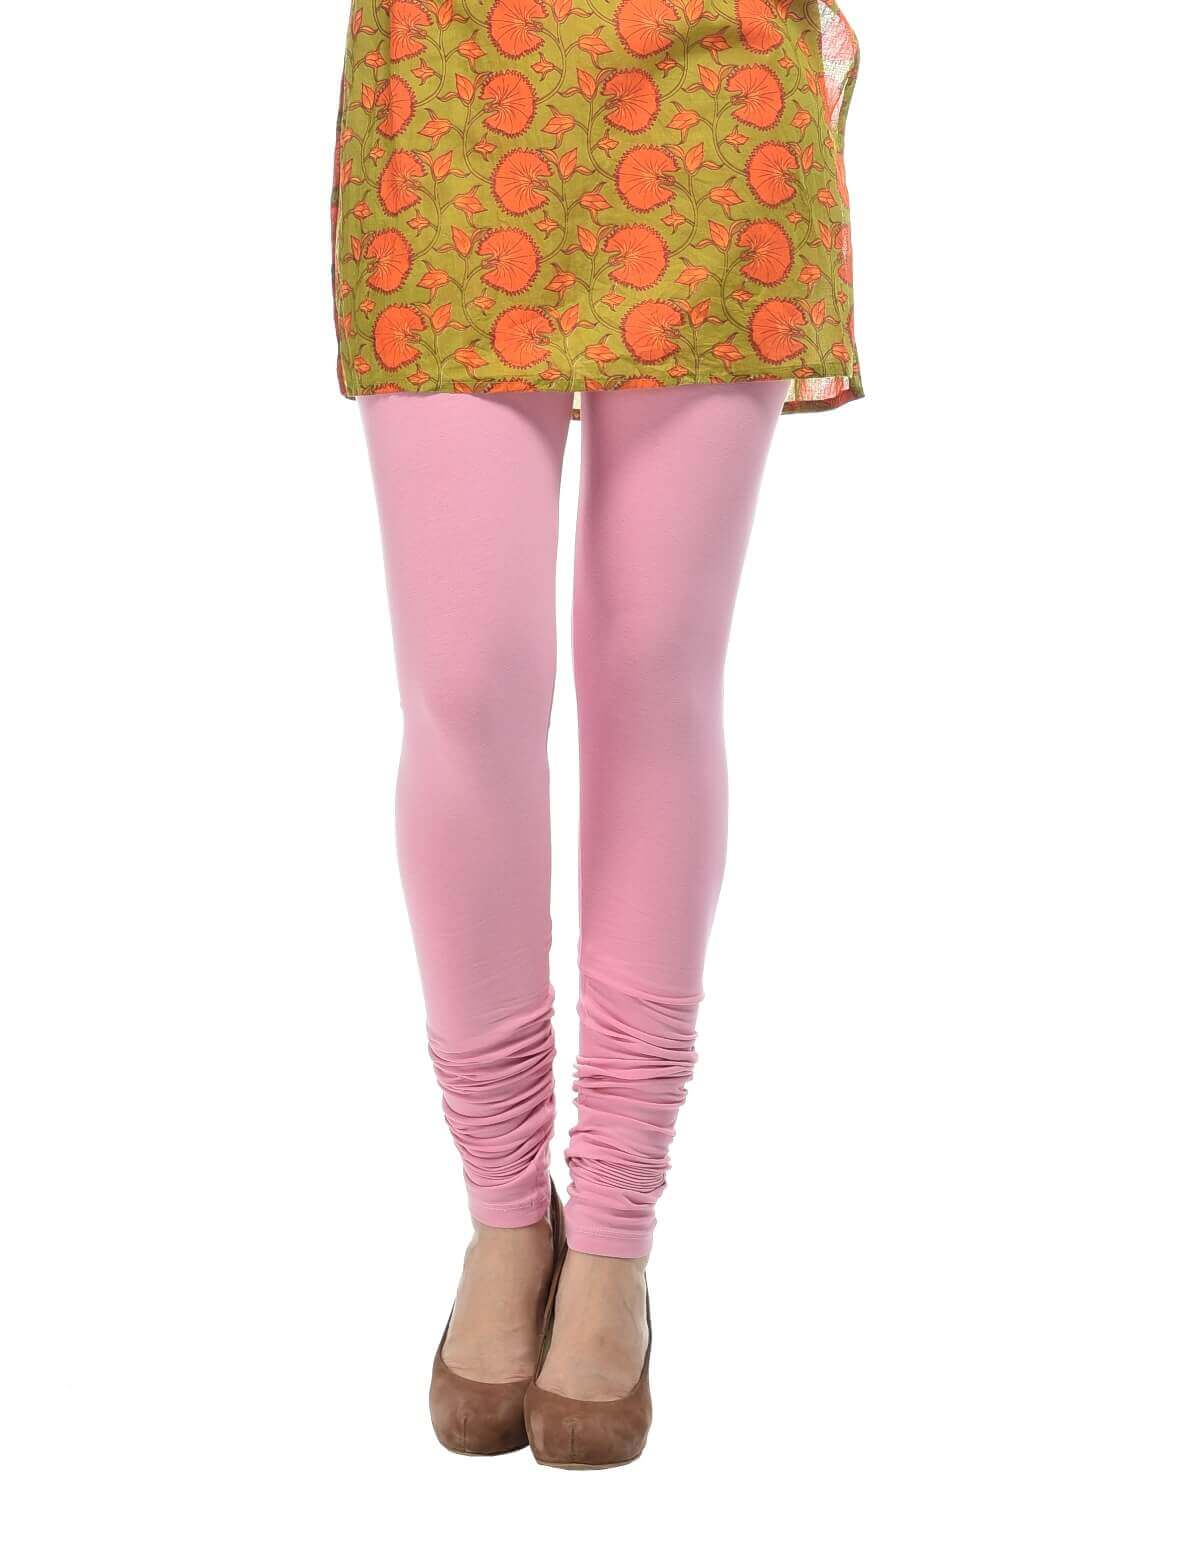 Buy Pink Leggings Online In India - Etsy India